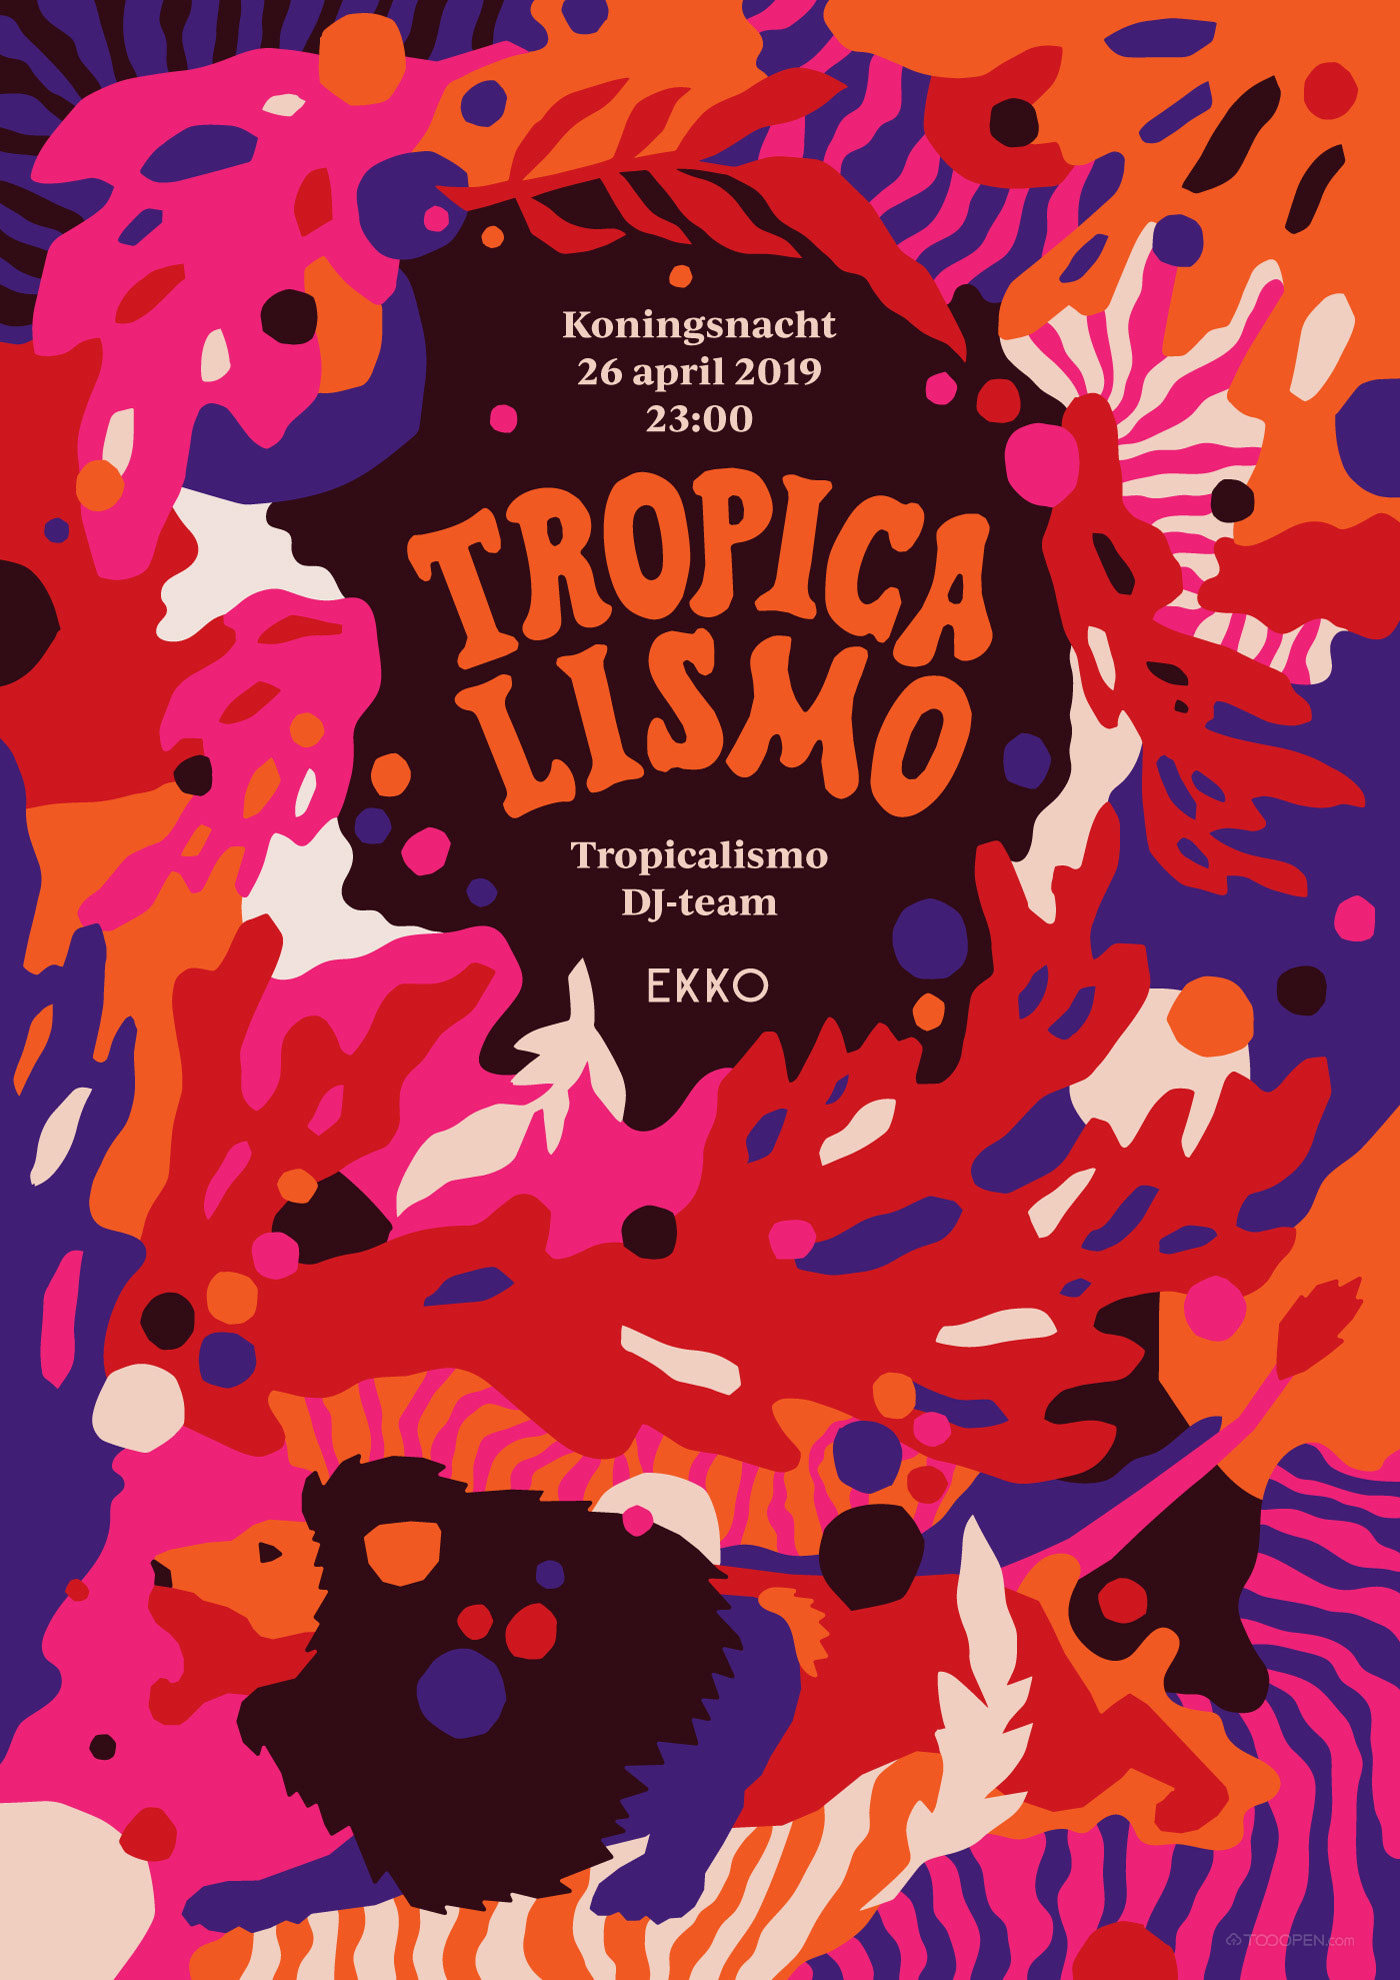 炫酷热带植物tropicalismo舞曲海报设计欣赏-01